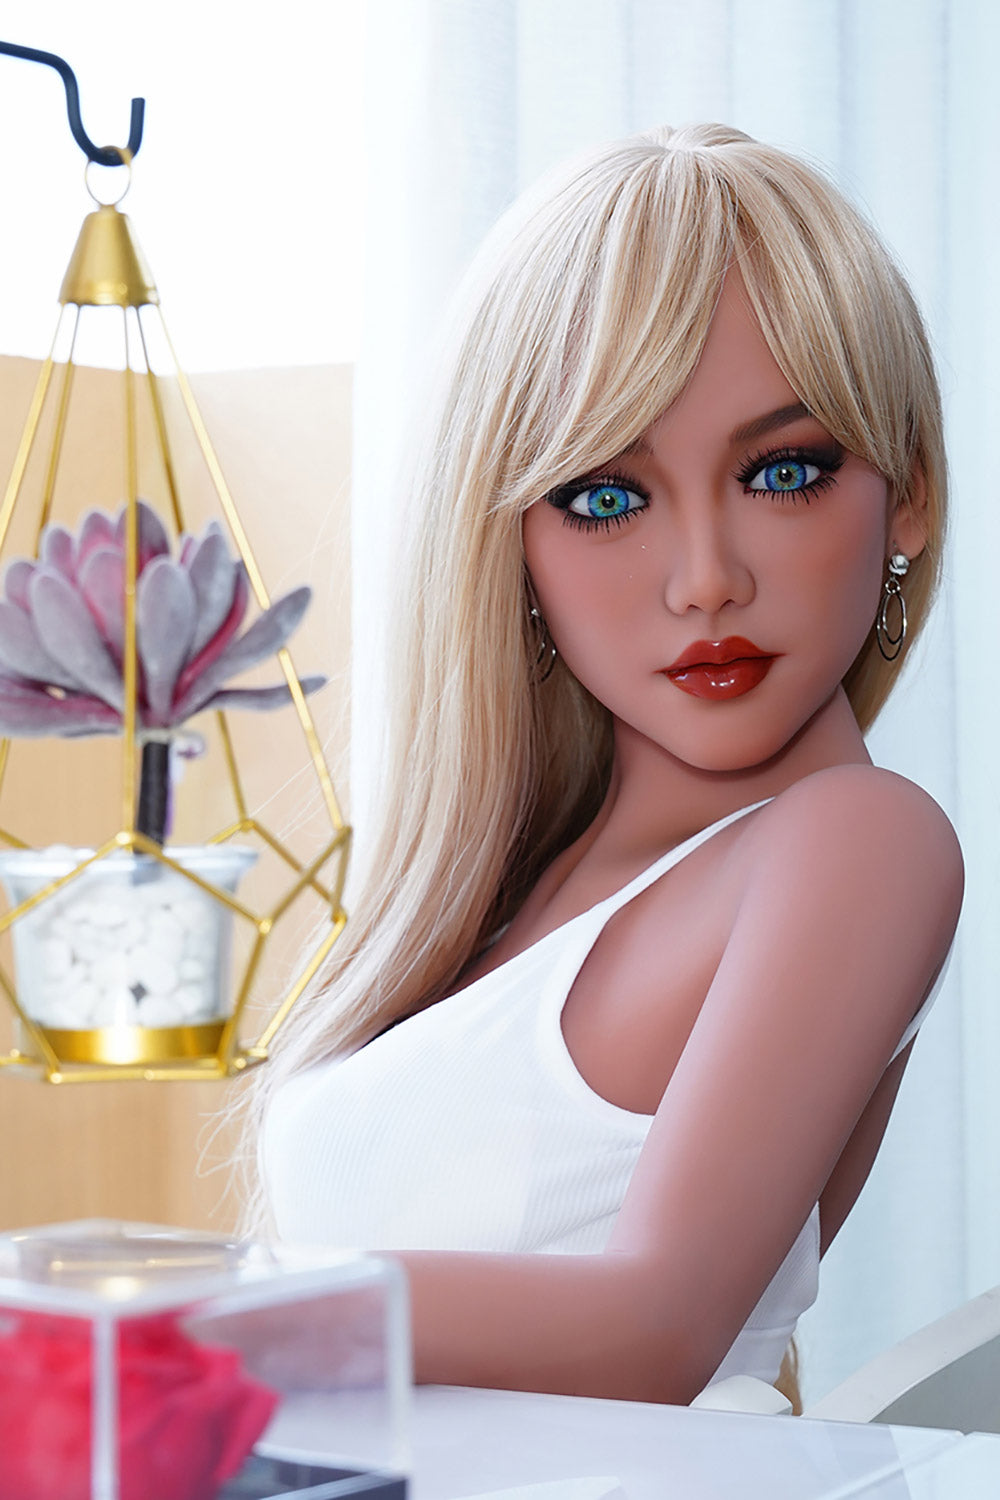 US Stock - Lidia 156cm Small Boob TPE Sex Doll B #K1 Realistic Adult Love Doll